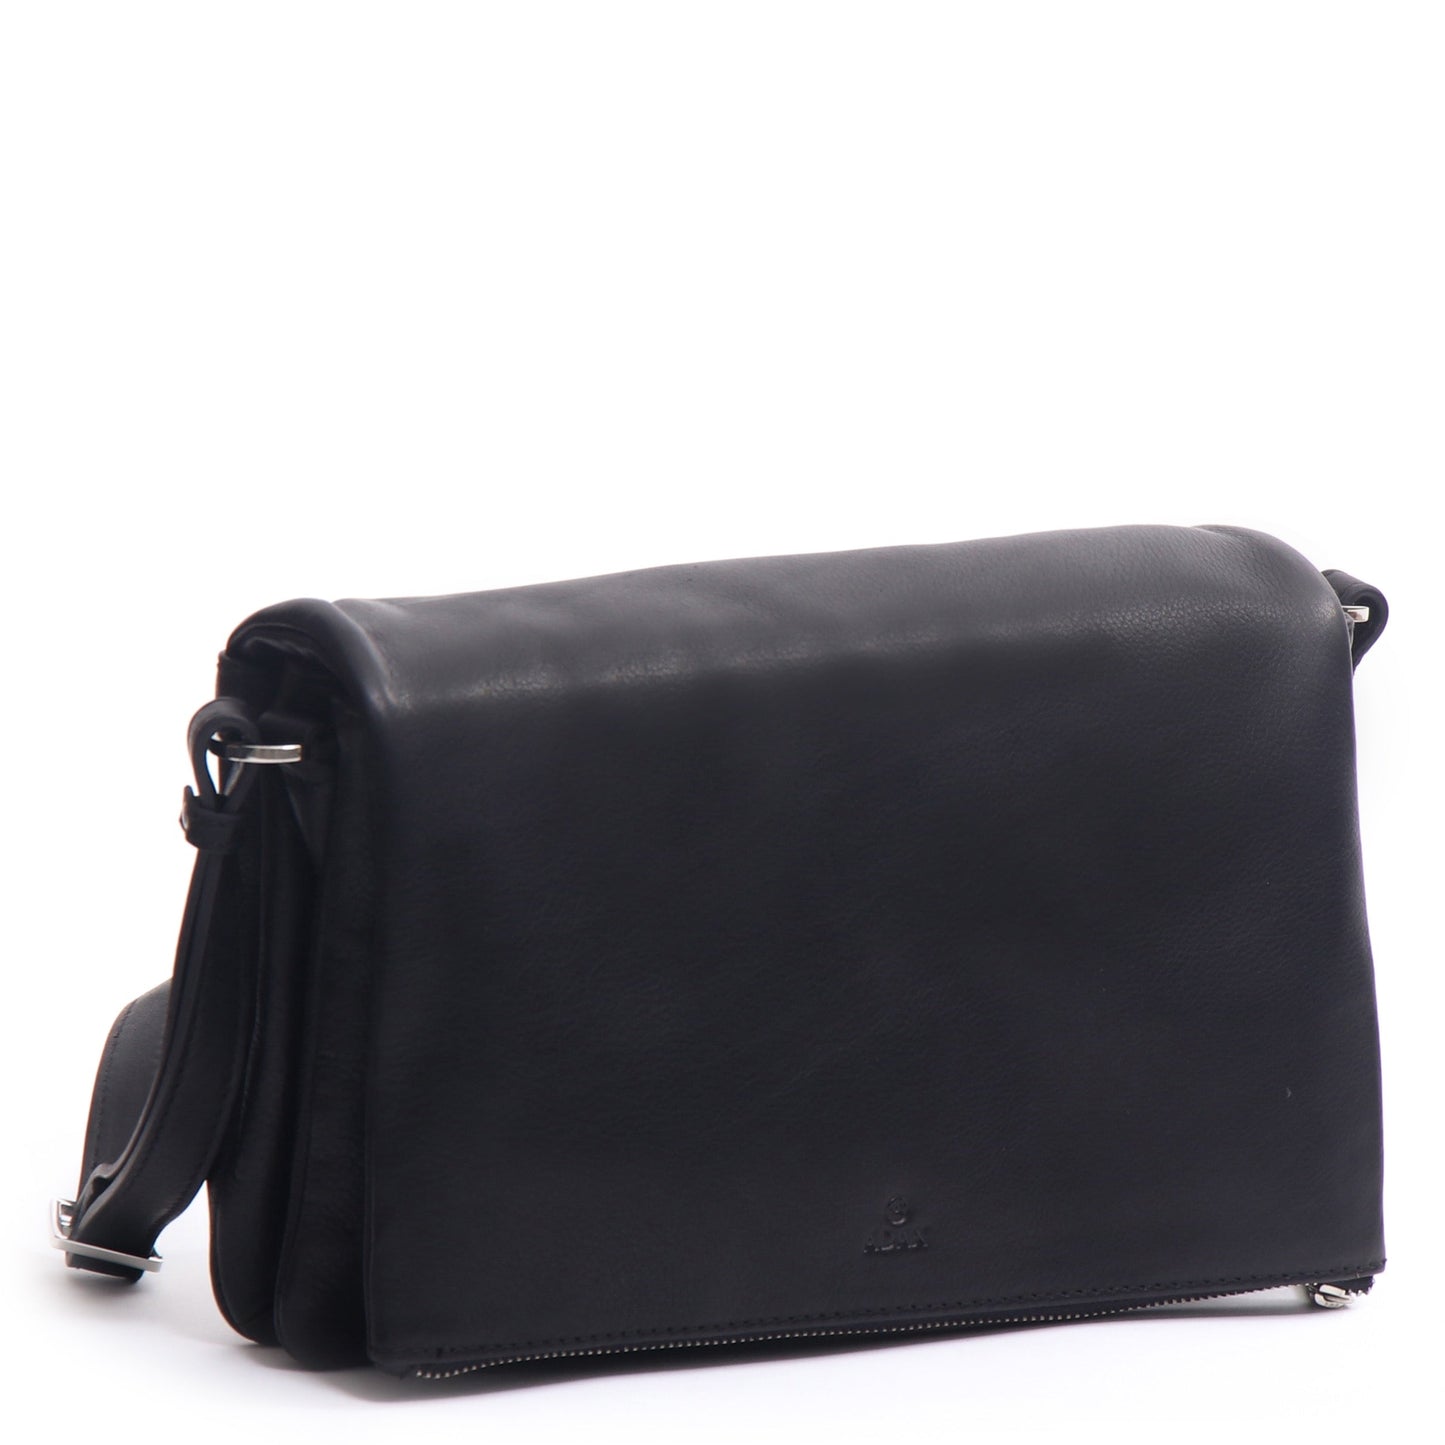 Damenhandtasche 127340 von Adax - Laure Bags and Travel